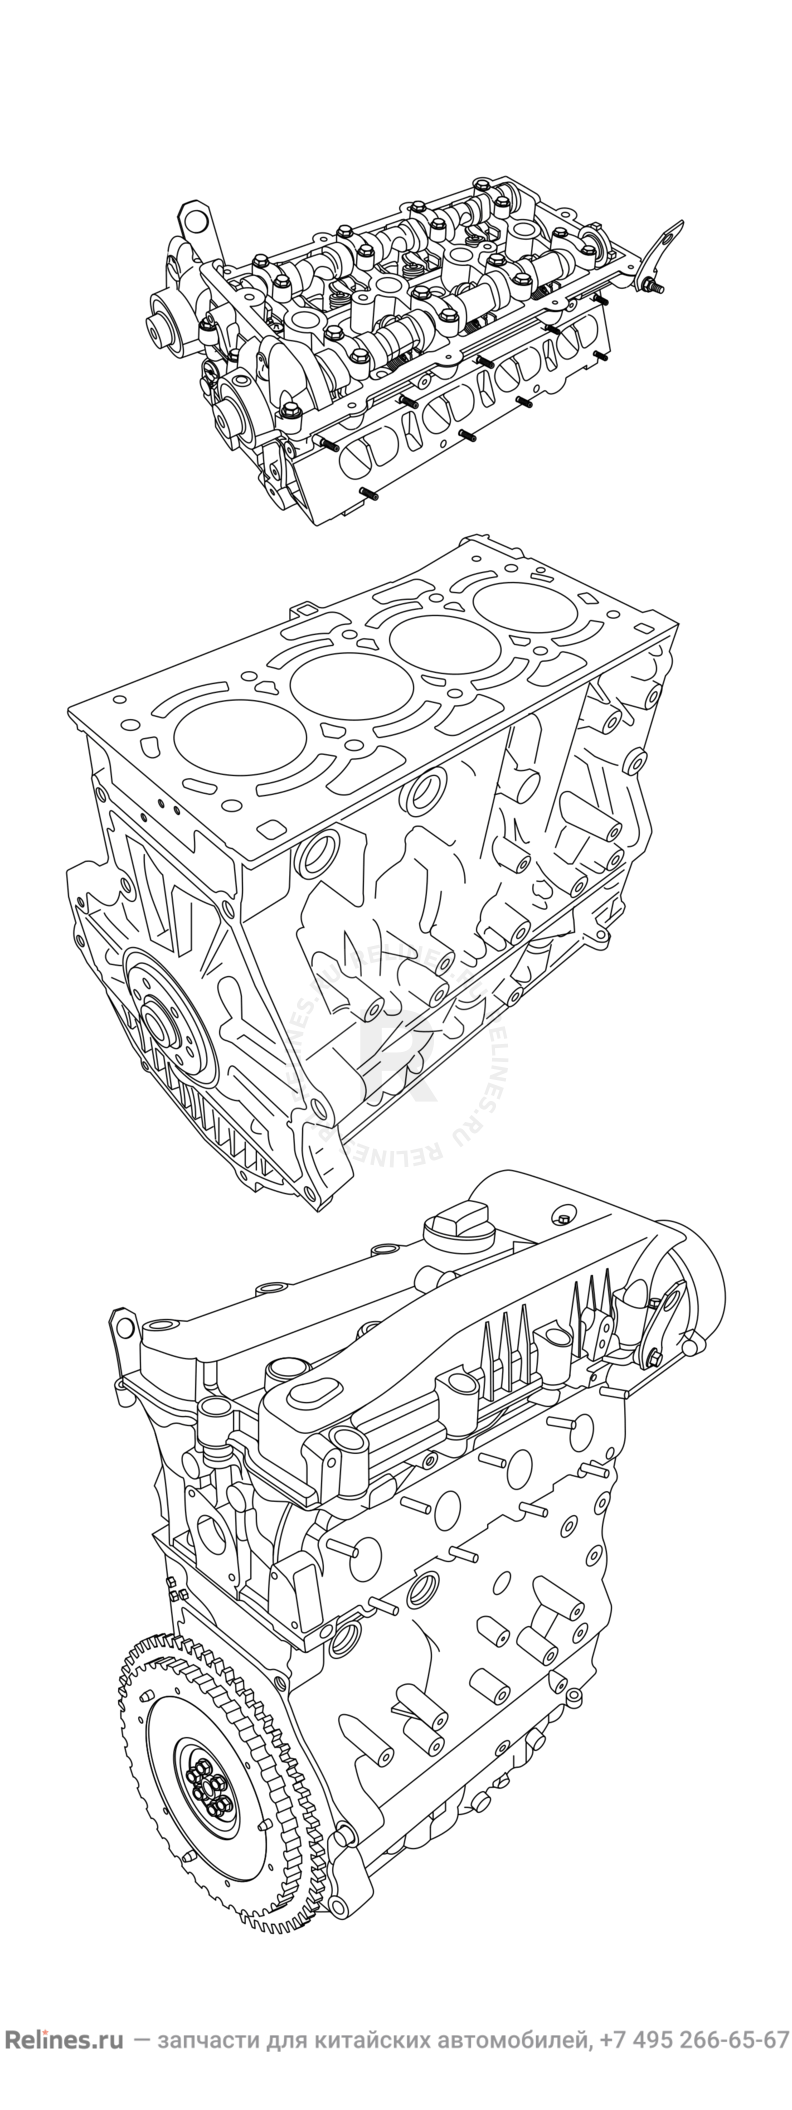 Запчасти Chery Tiggo Поколение I (2005)  — Двигатель в сборе — схема